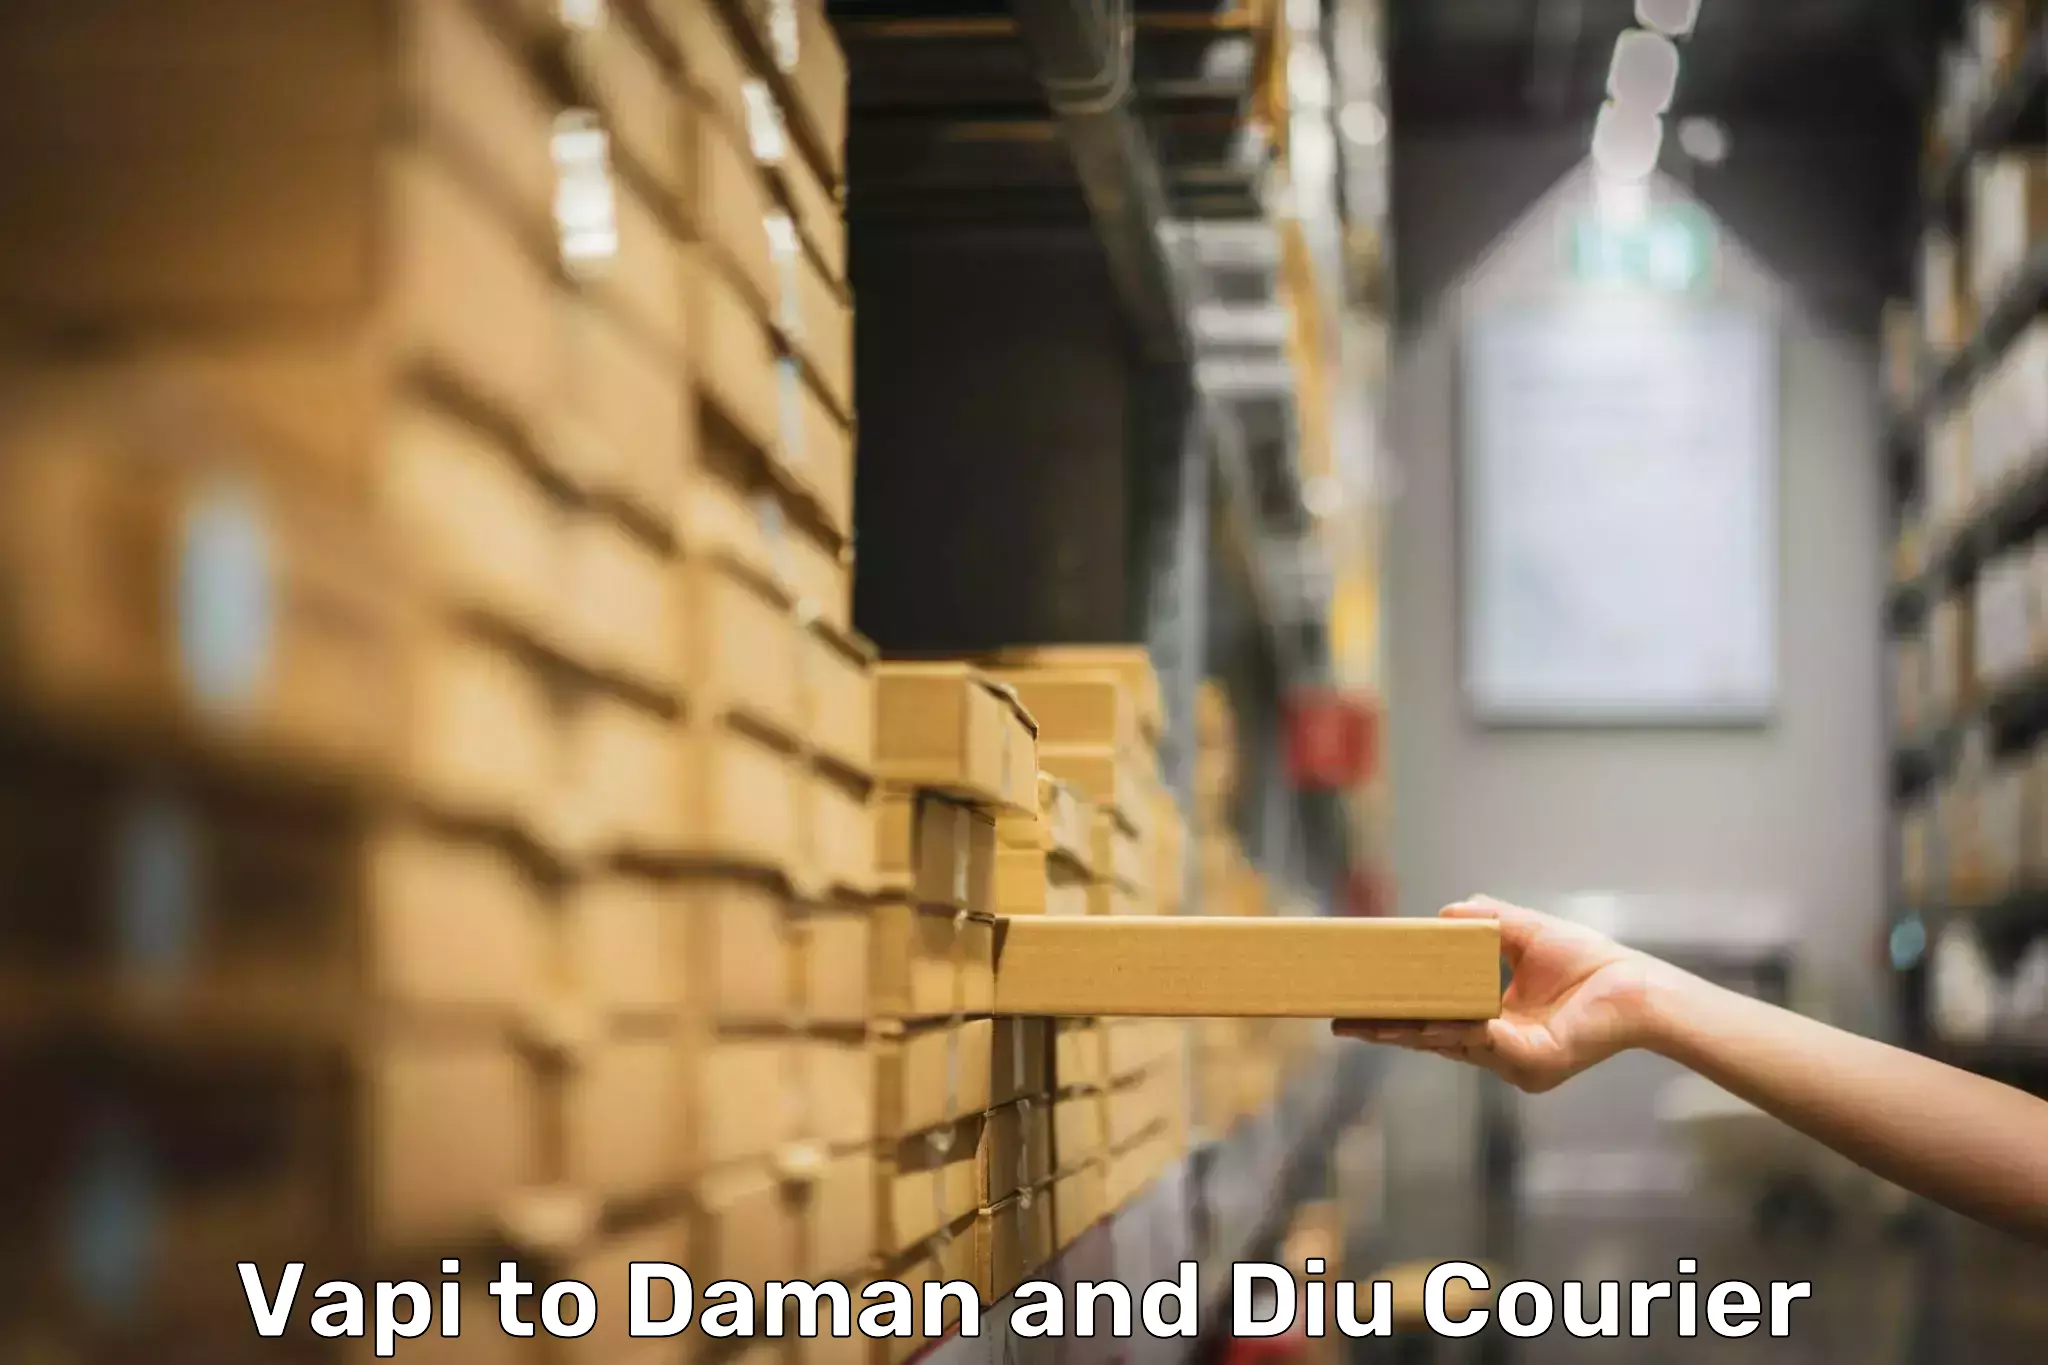 Digital baggage courier Vapi to Daman and Diu